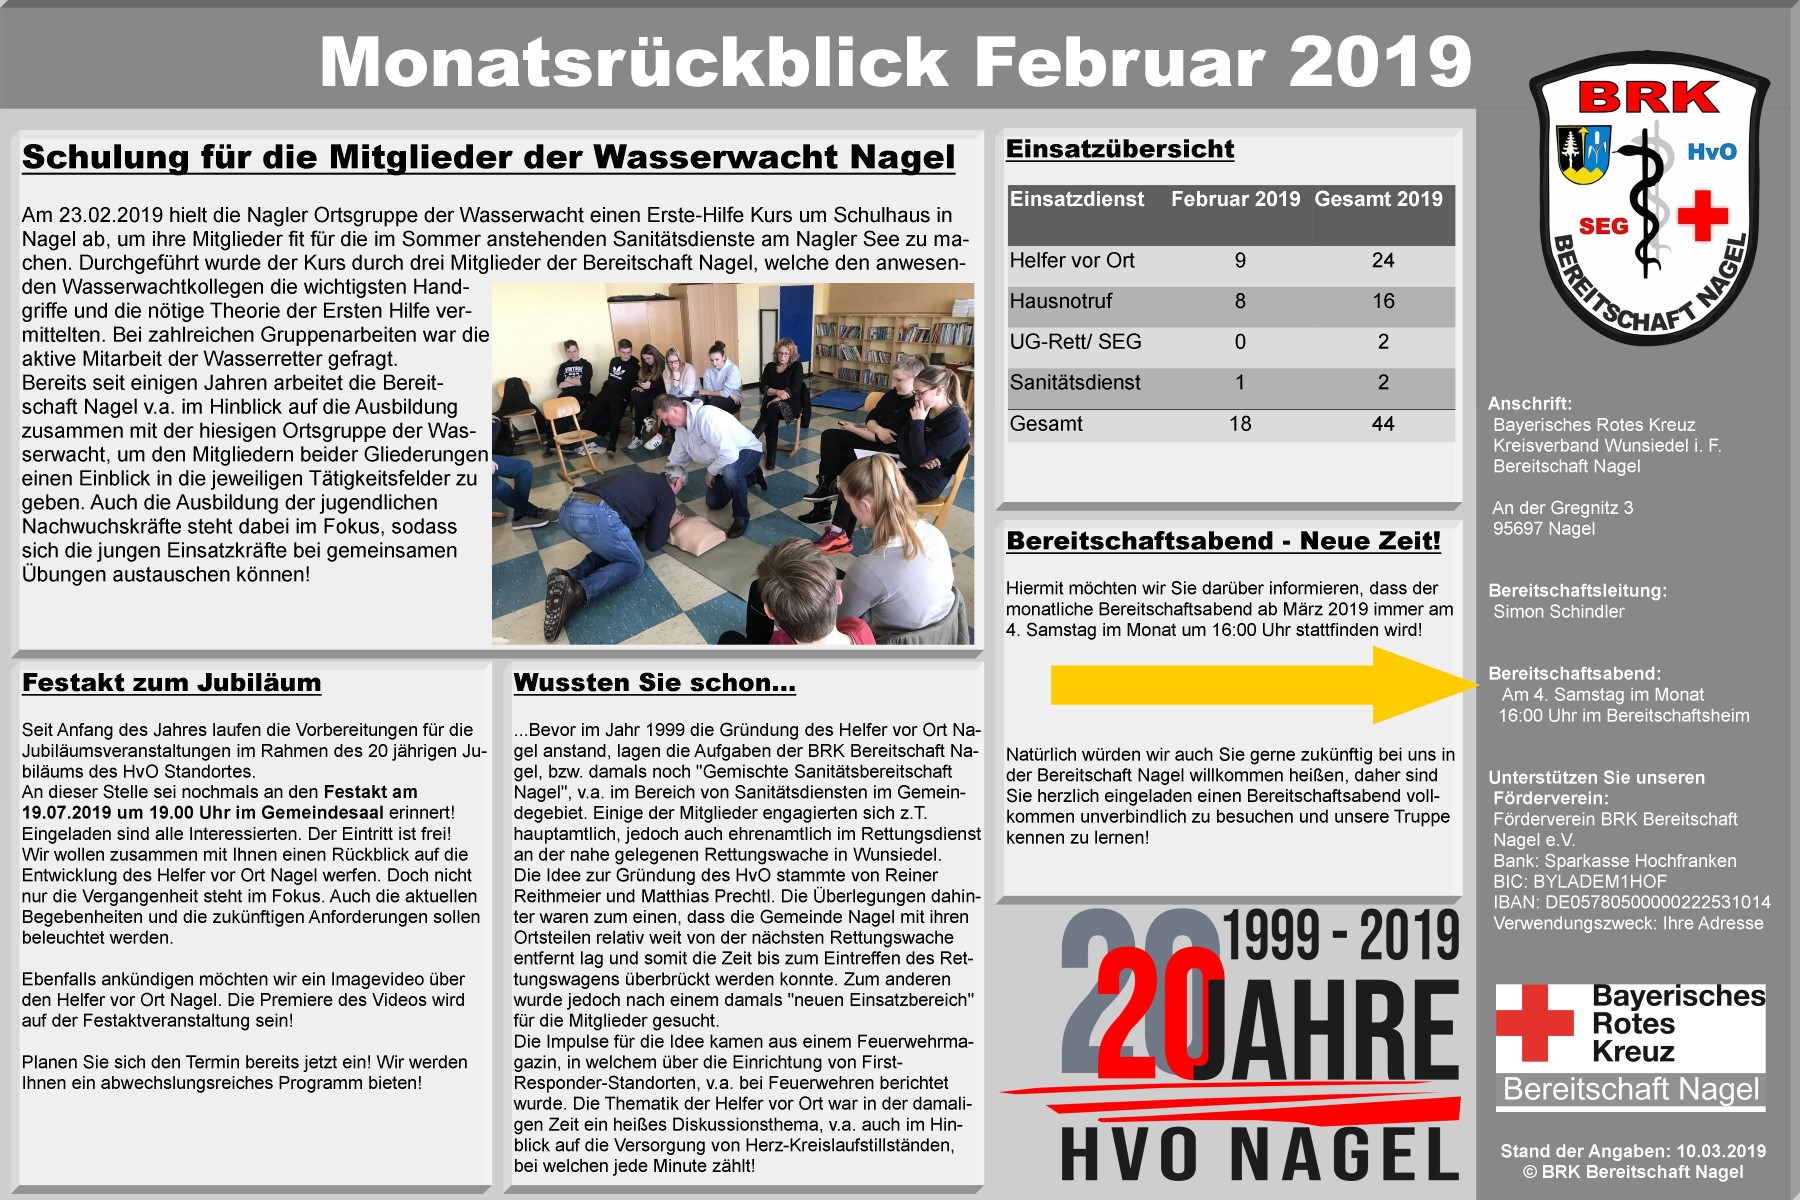 2_-_Plakat_Monatsrckblick_Februar_2019.jpg